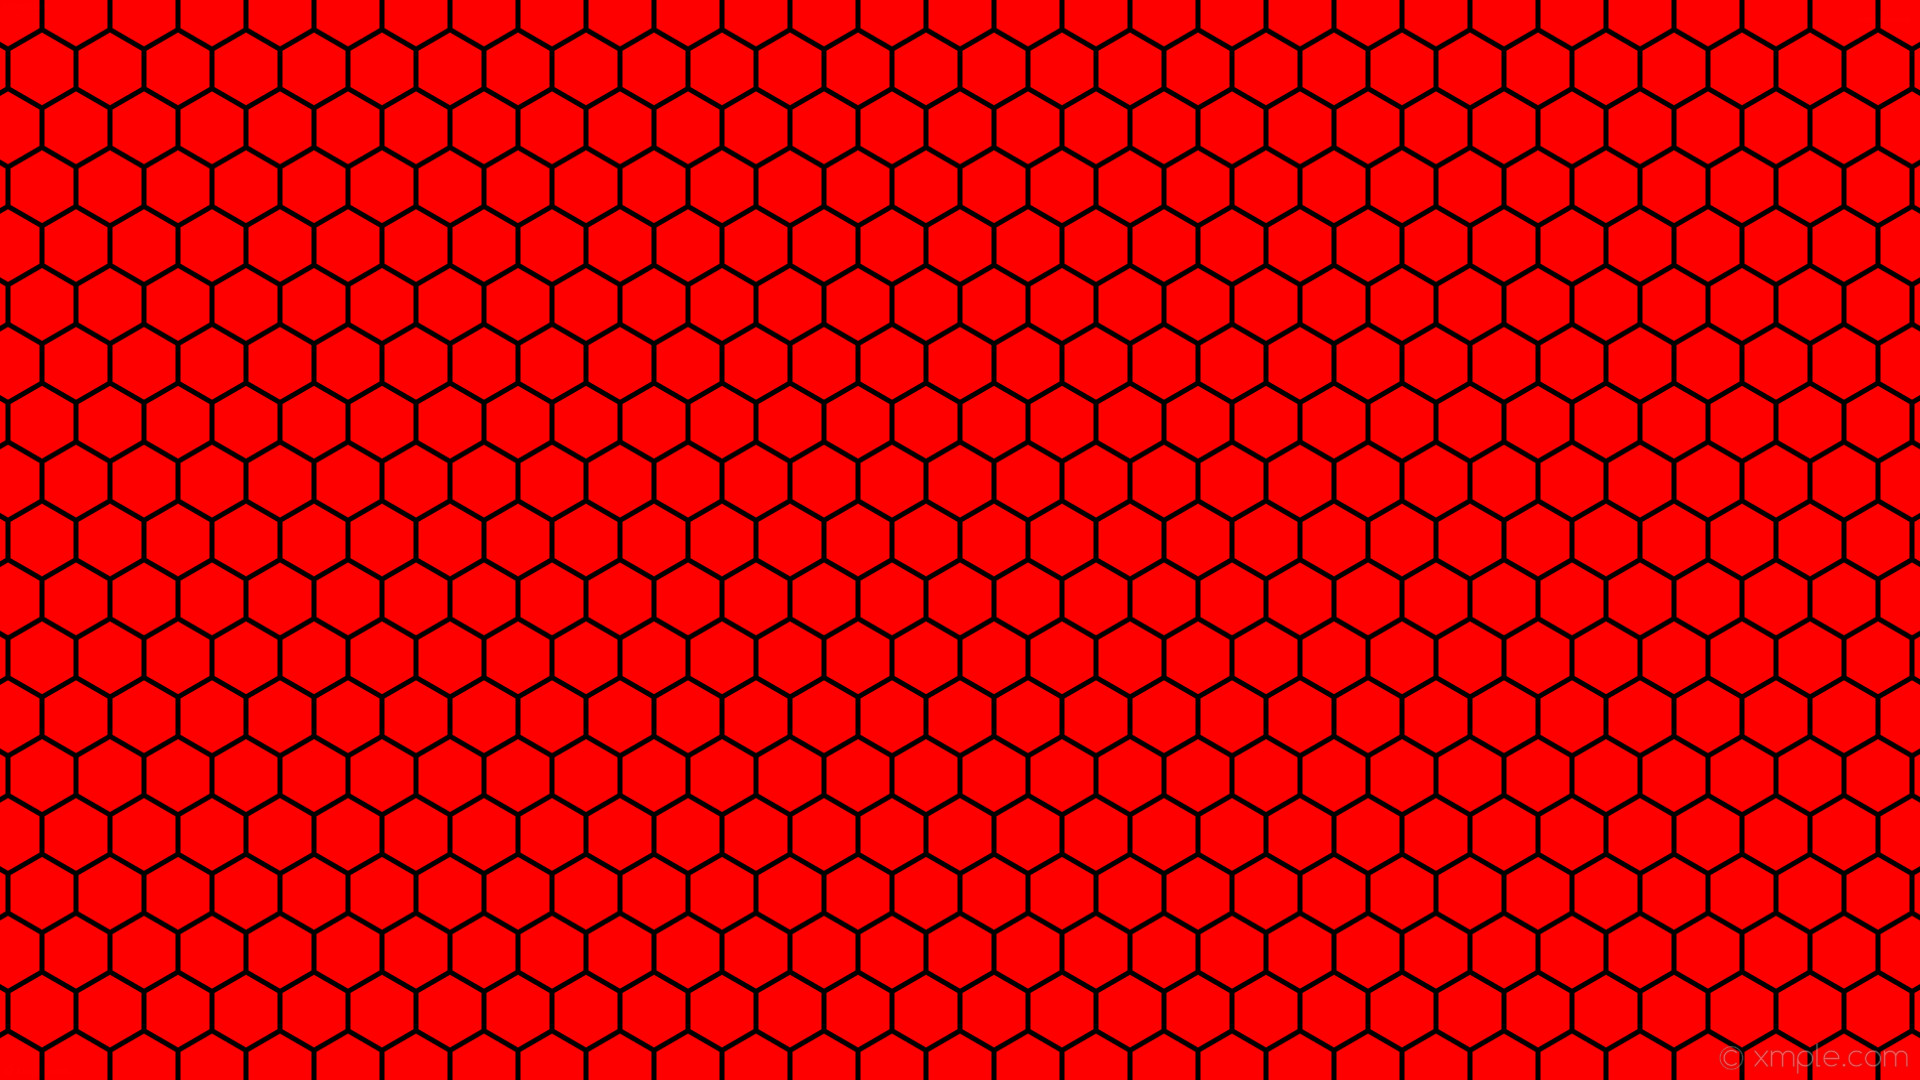 1920x1080 wallpaper beehive hexagon red black honeycomb #ff0000 #000000 0Â° 5px 68px